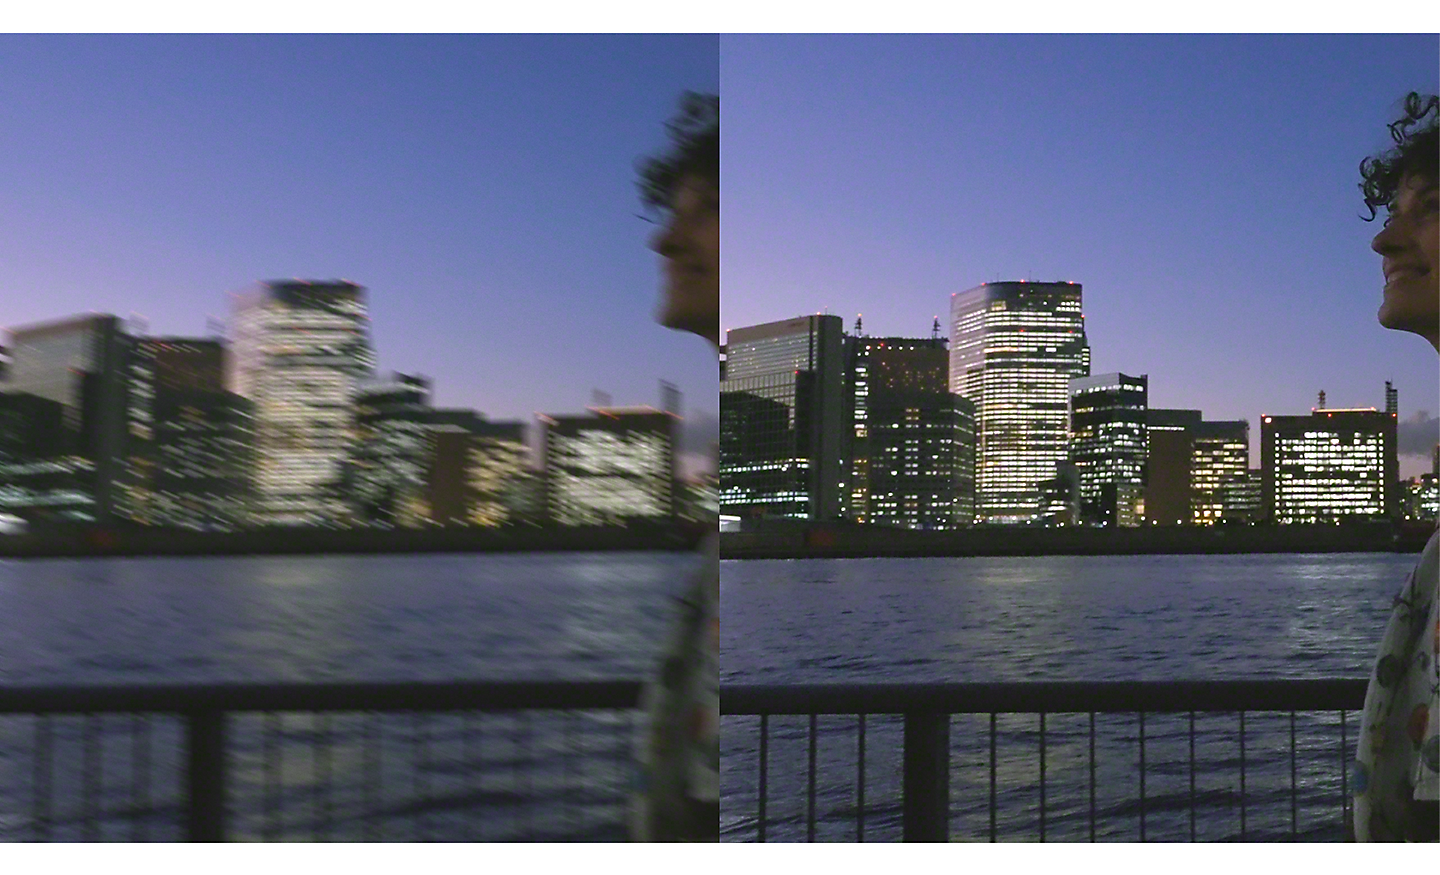 Double image d'un paysage urbain de nuit : celle de gauche est floue, tandis que celle de droite est nette